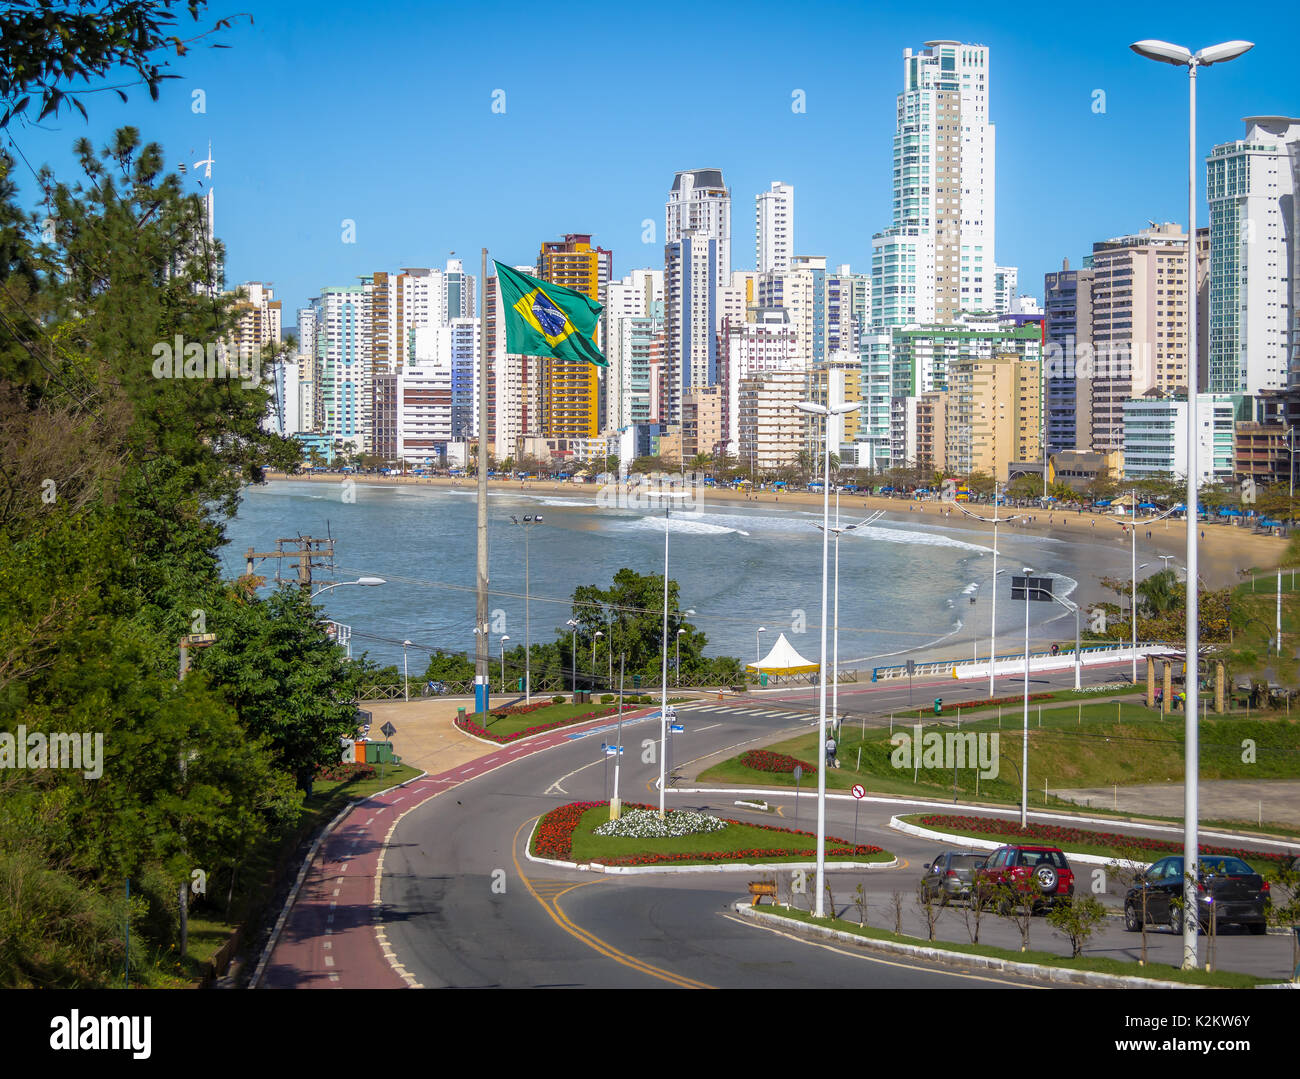 La ville de Balneario Camboriu et drapeau brésilien - Balneario Camboriu, Santa Catarina, Brésil Banque D'Images